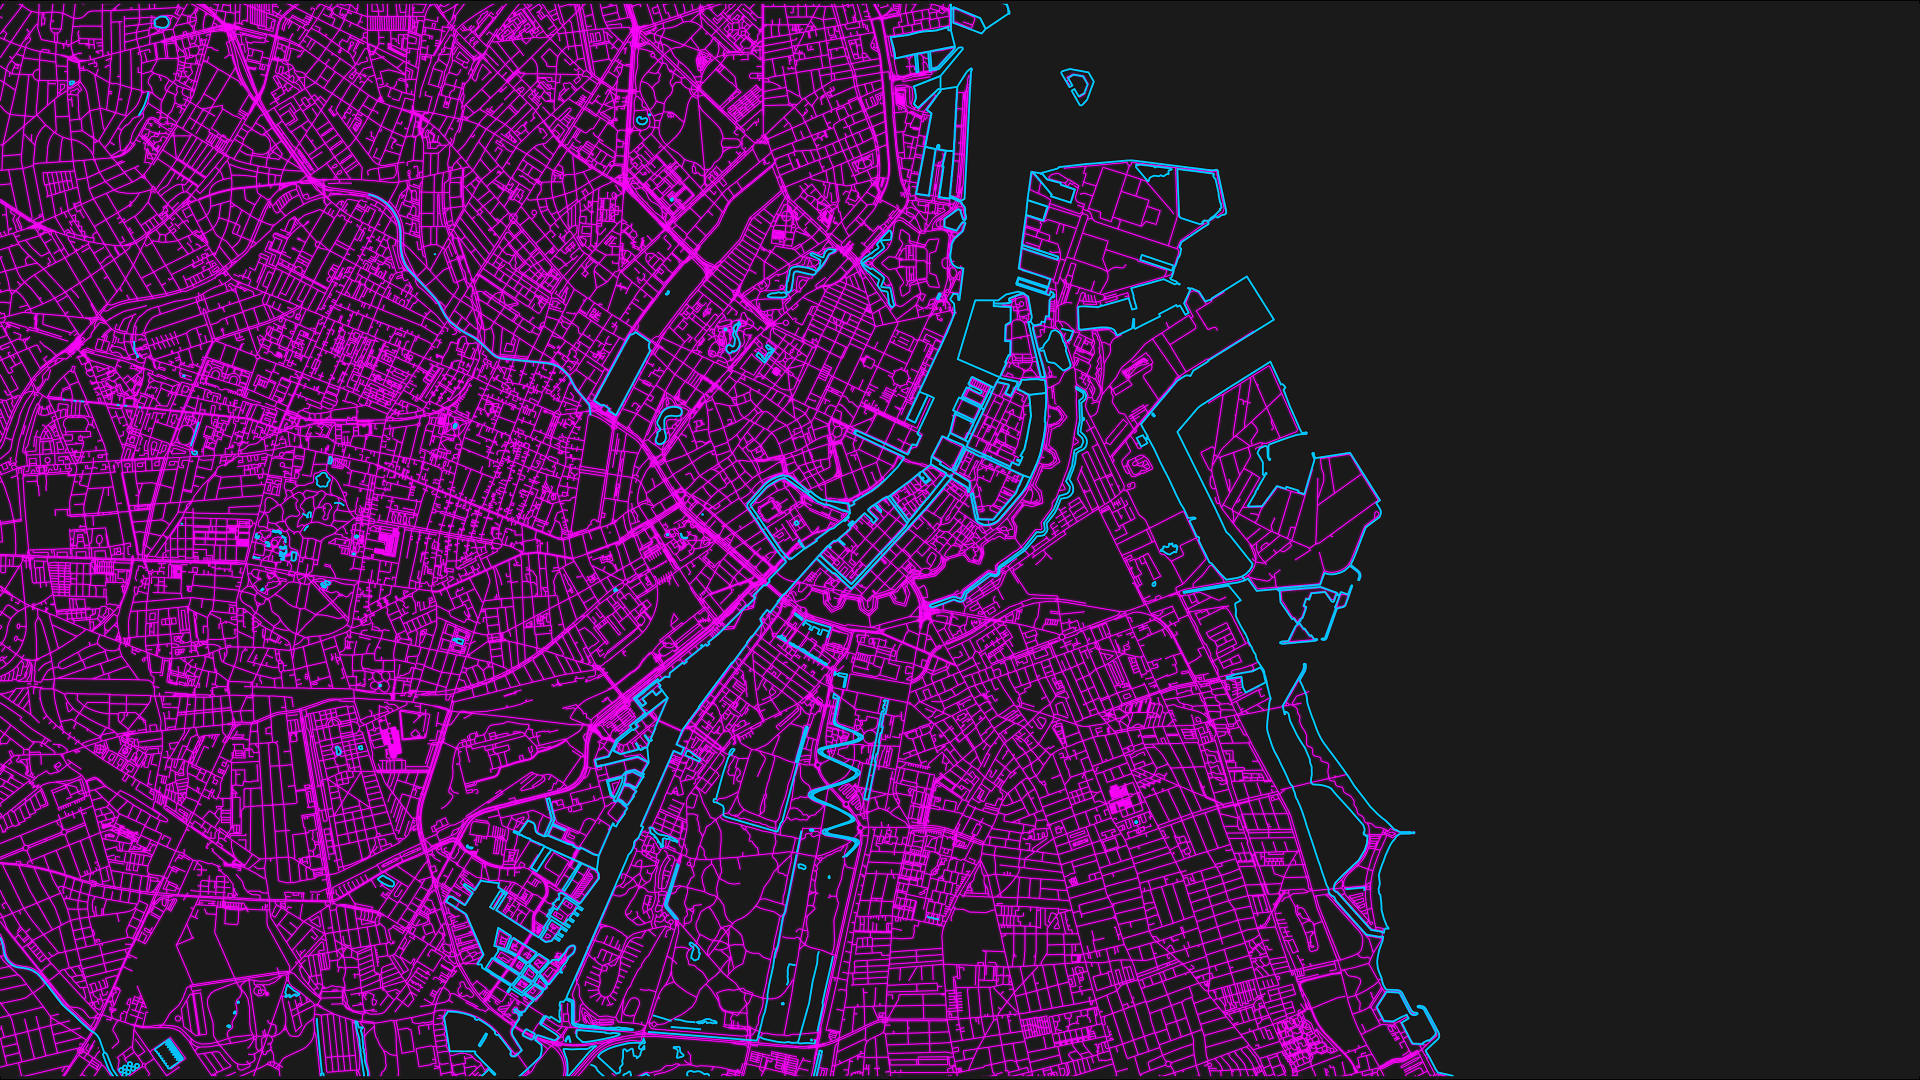 Carte de Copenhague réalisée à partir de données OSM (zoomée)